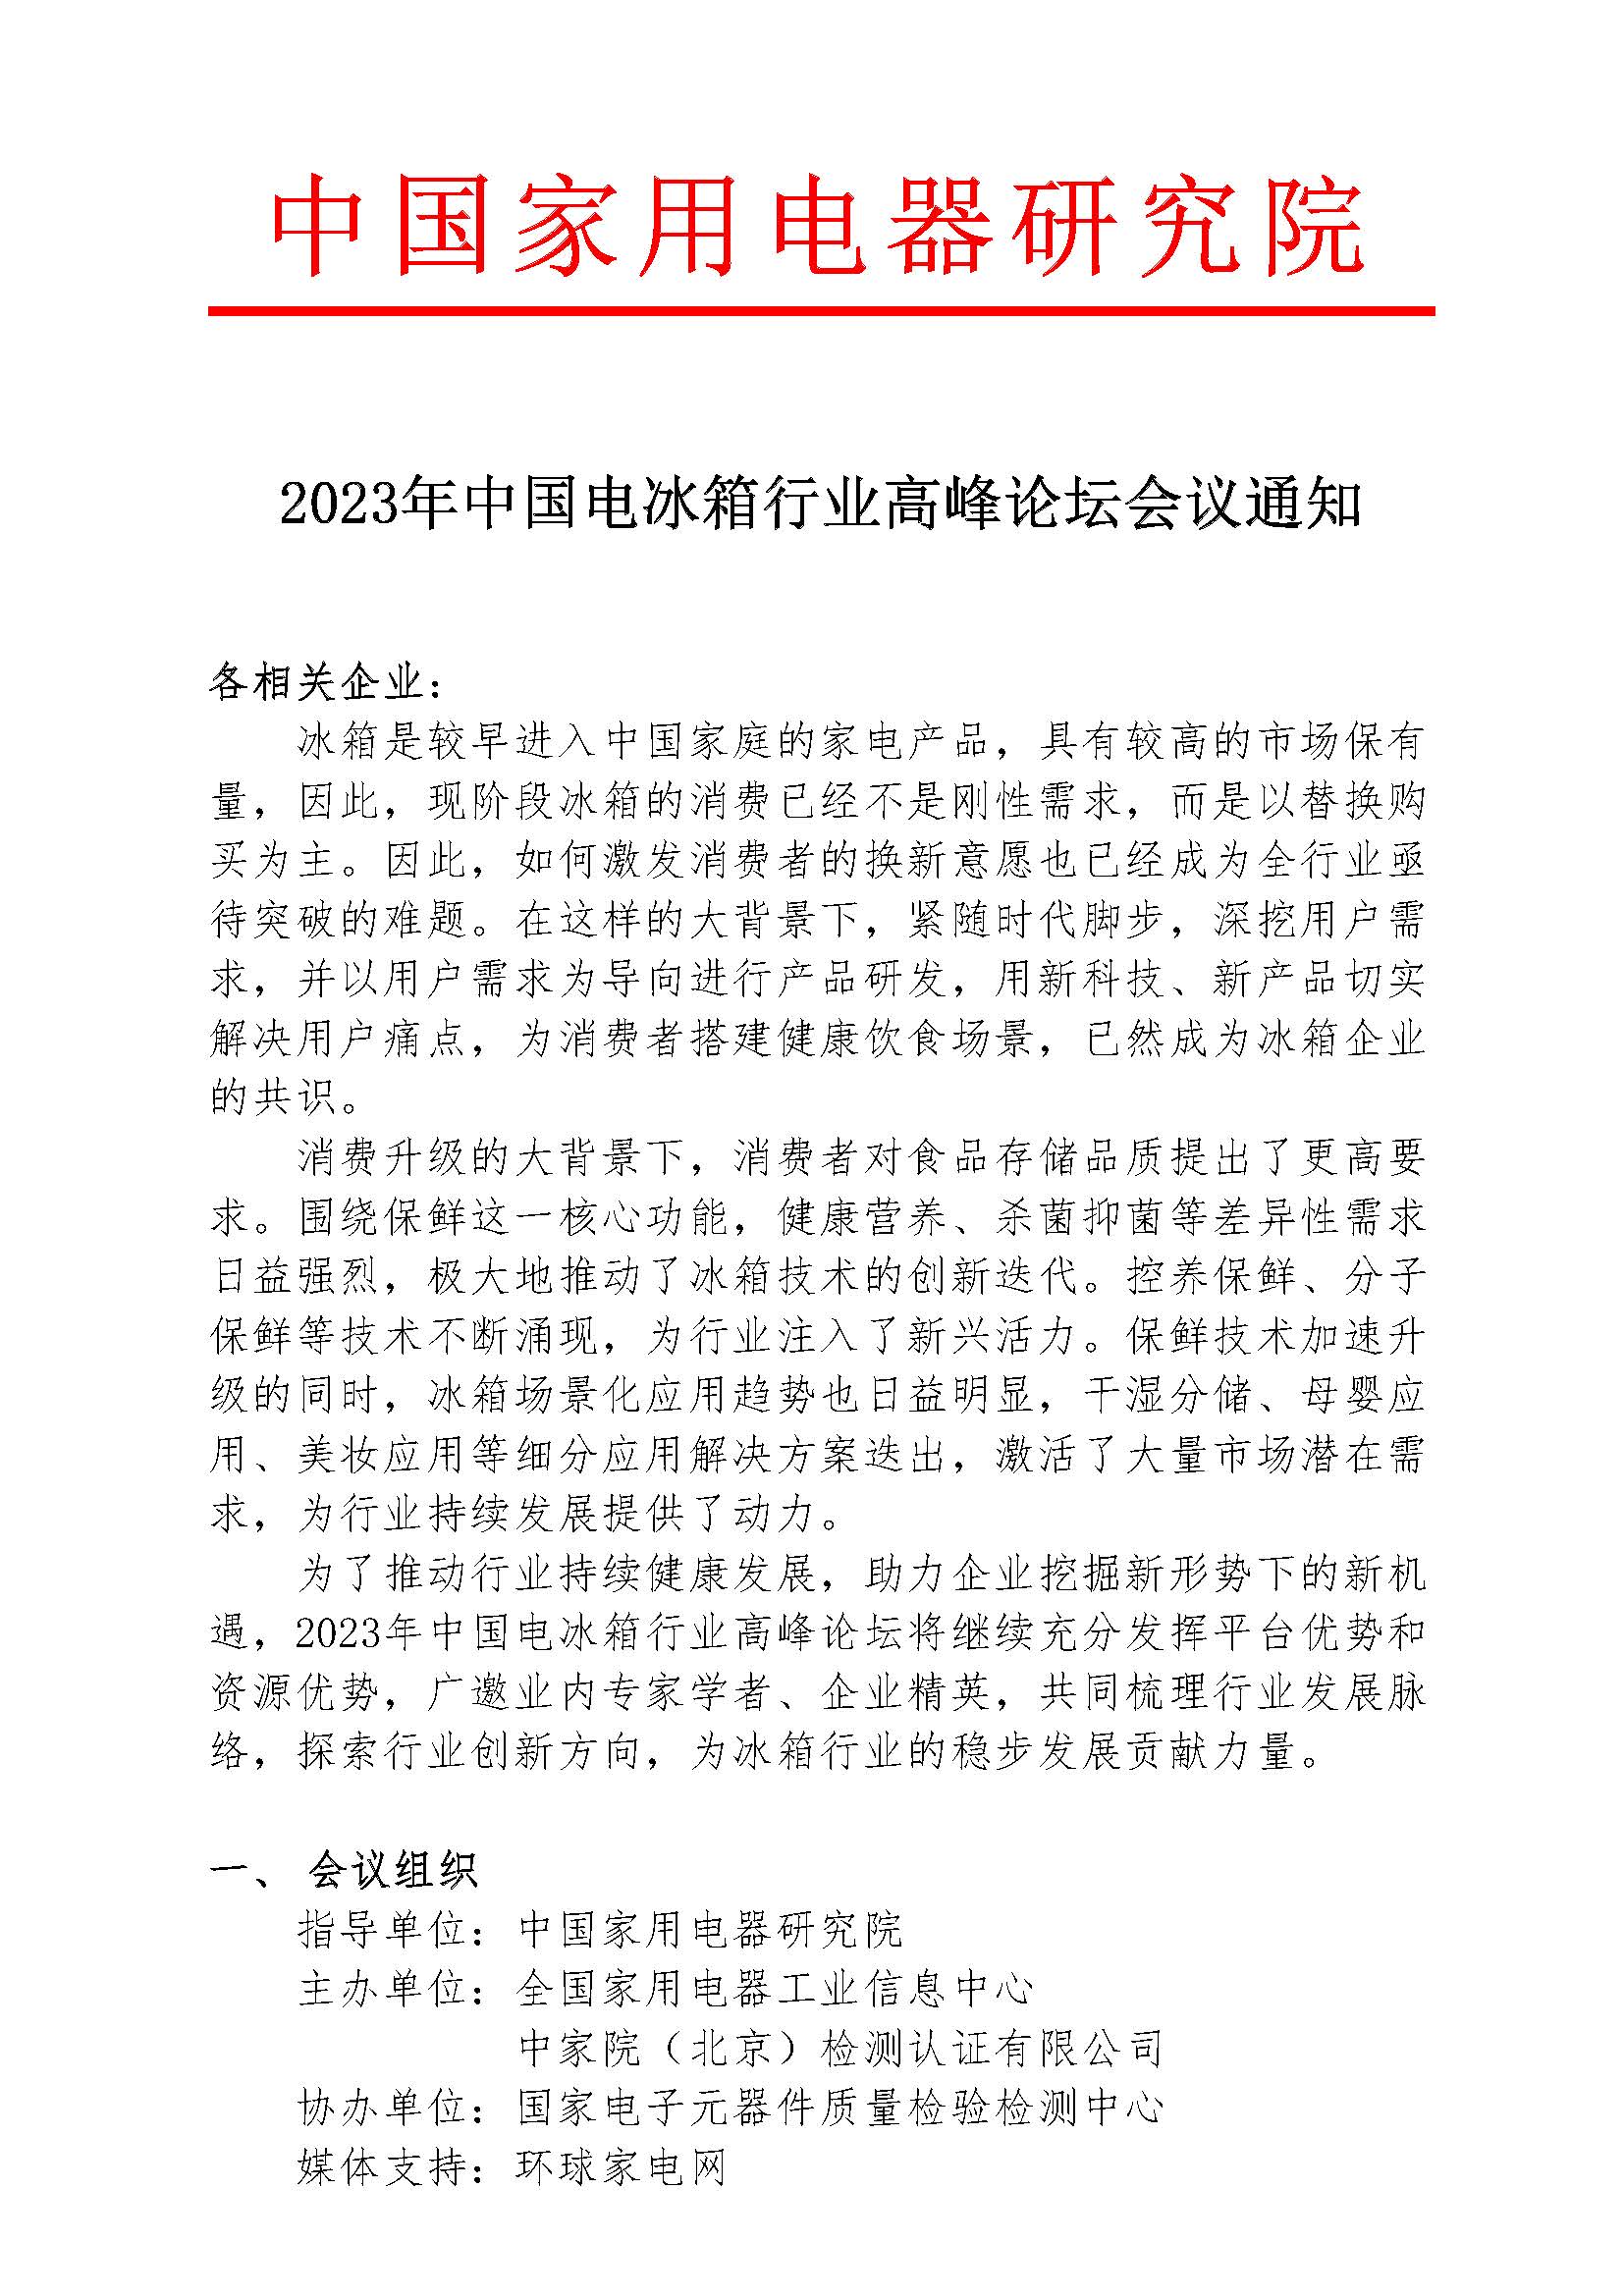 1-【会议通知】2023年中国电冰箱行业高峰论坛会议通知_页面_1.jpg